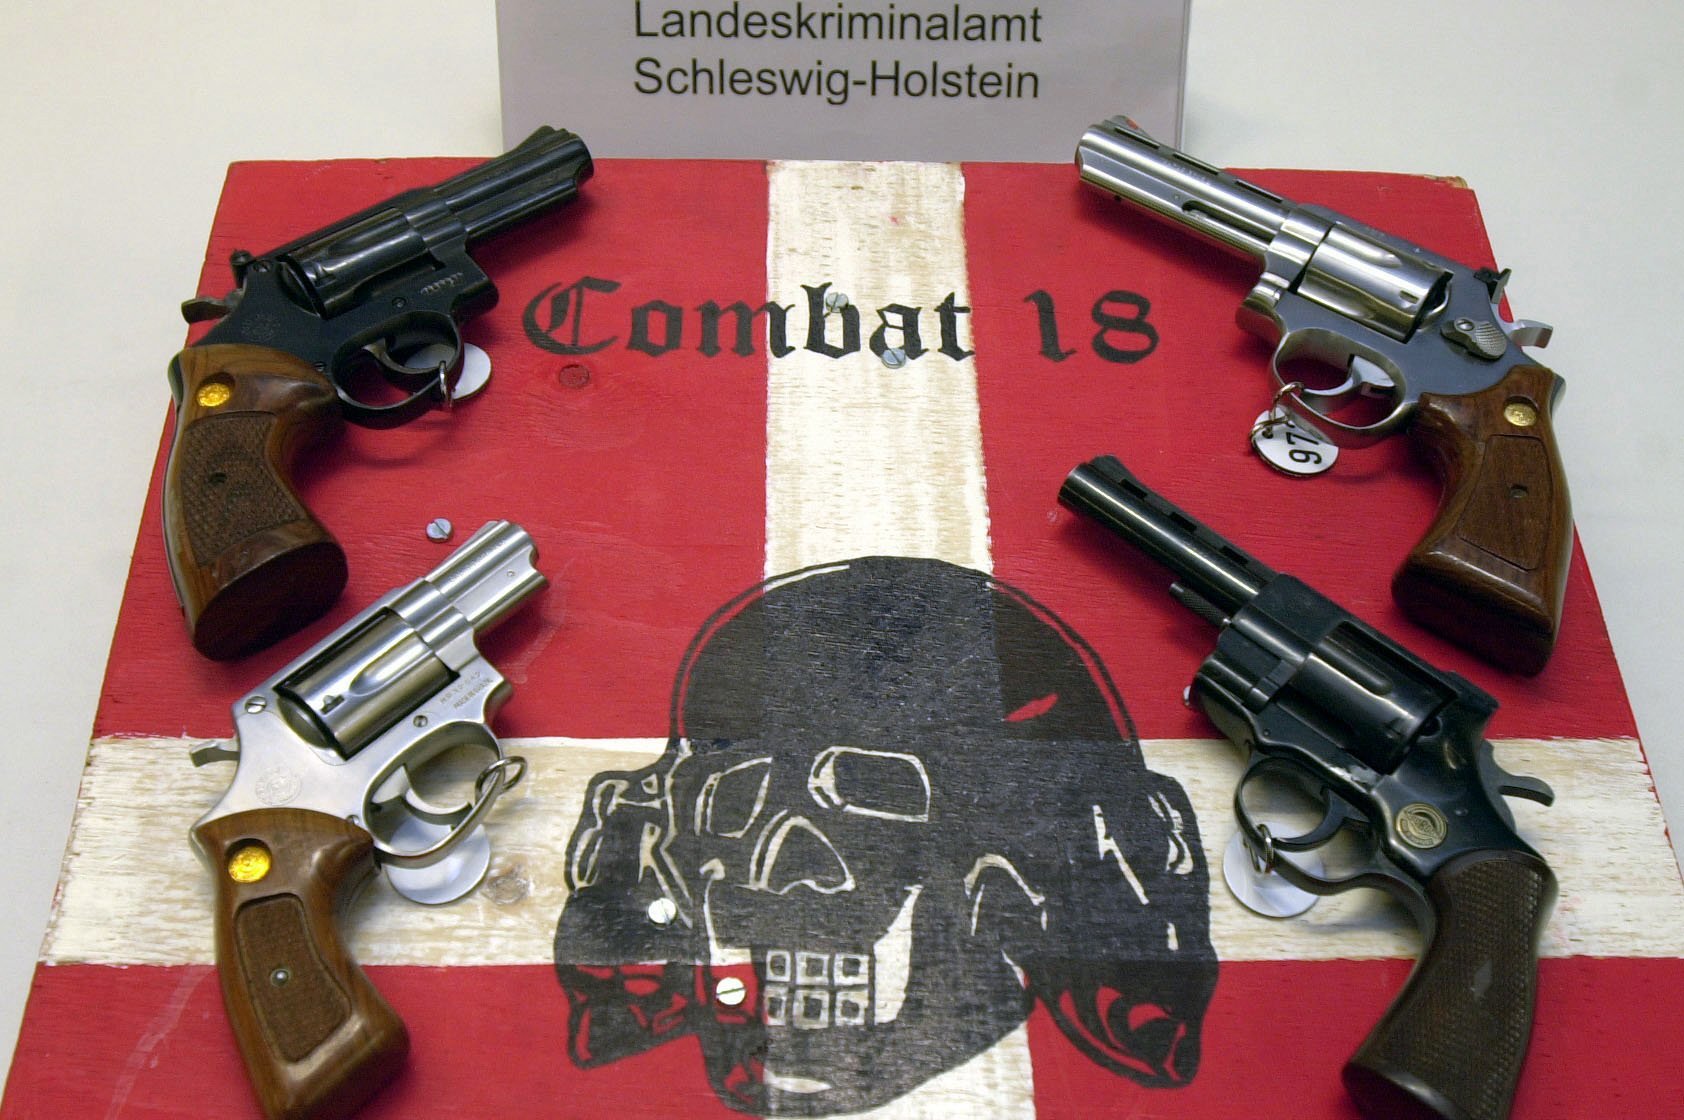 Sichergestellte Waffen und ein Schild der kriminellen Neonazi-Gruppe "Combat 18" liegen im schleswig-holsteinischen Landeskriminalamt in Kiel. | picture-alliance / dpa/dpaweb